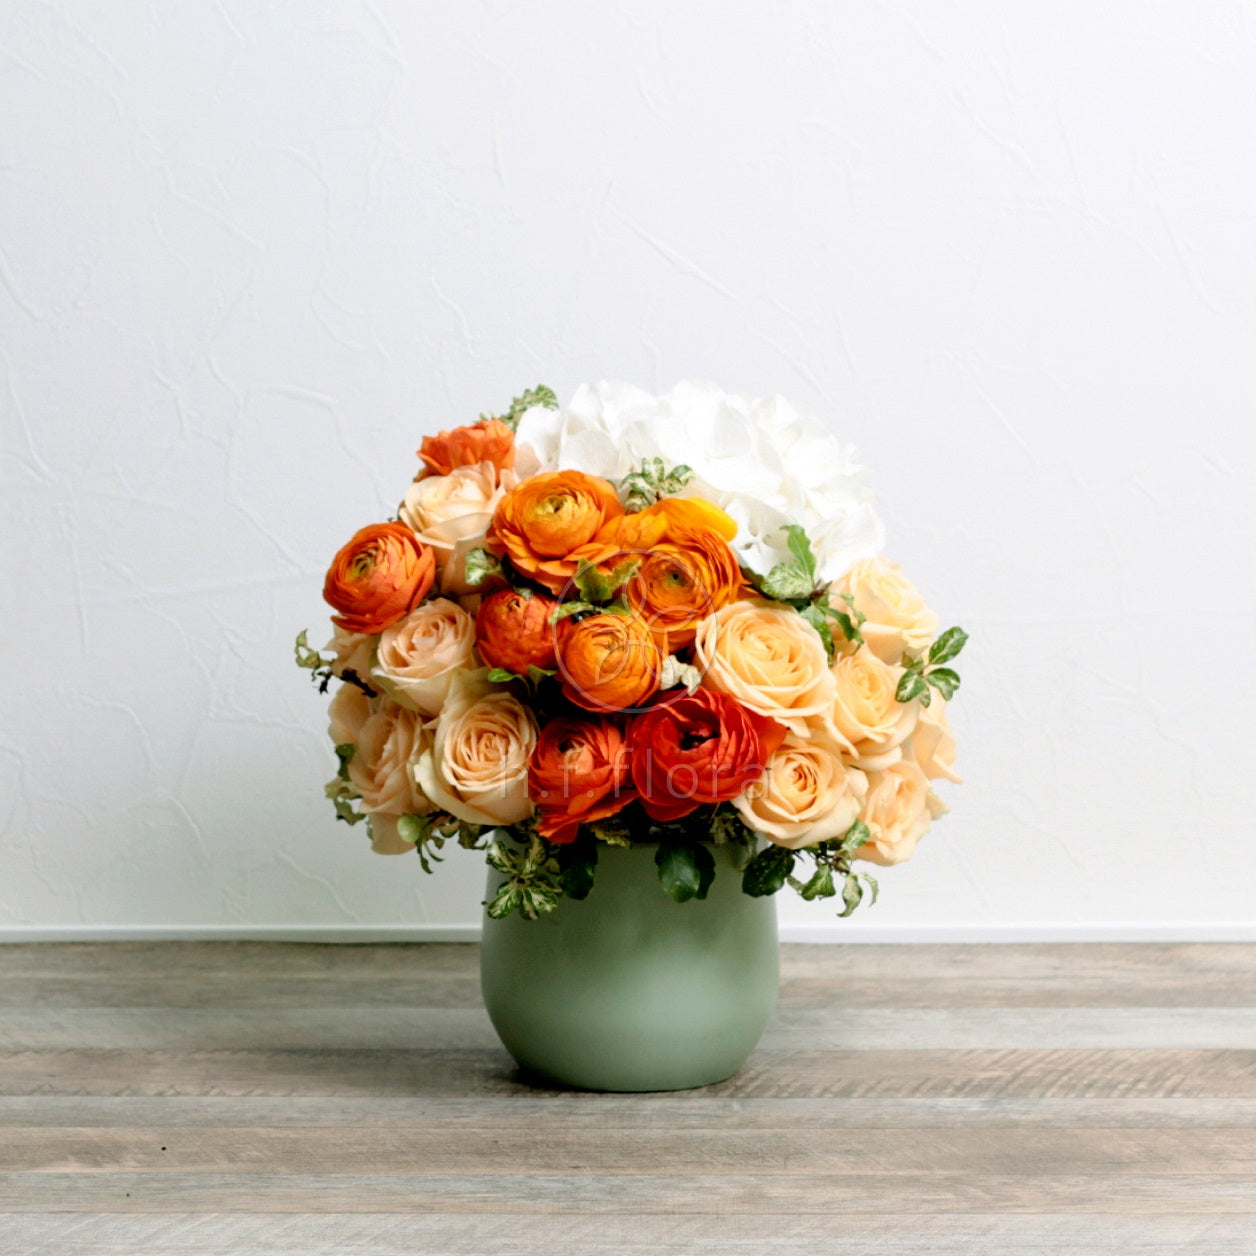 Brighten up flower vase view